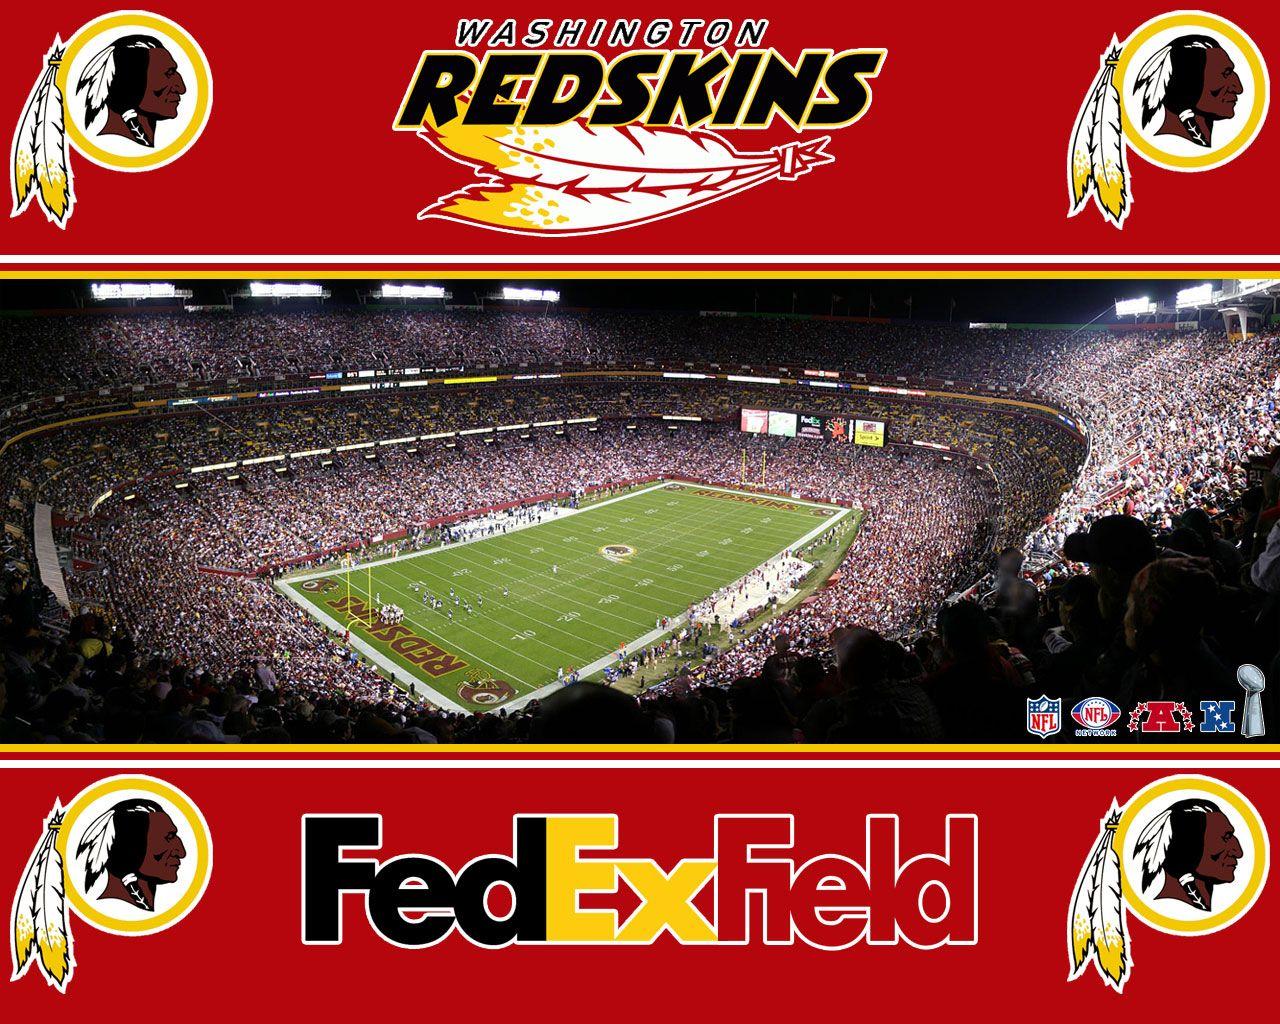 Washington Redskins wallpapers